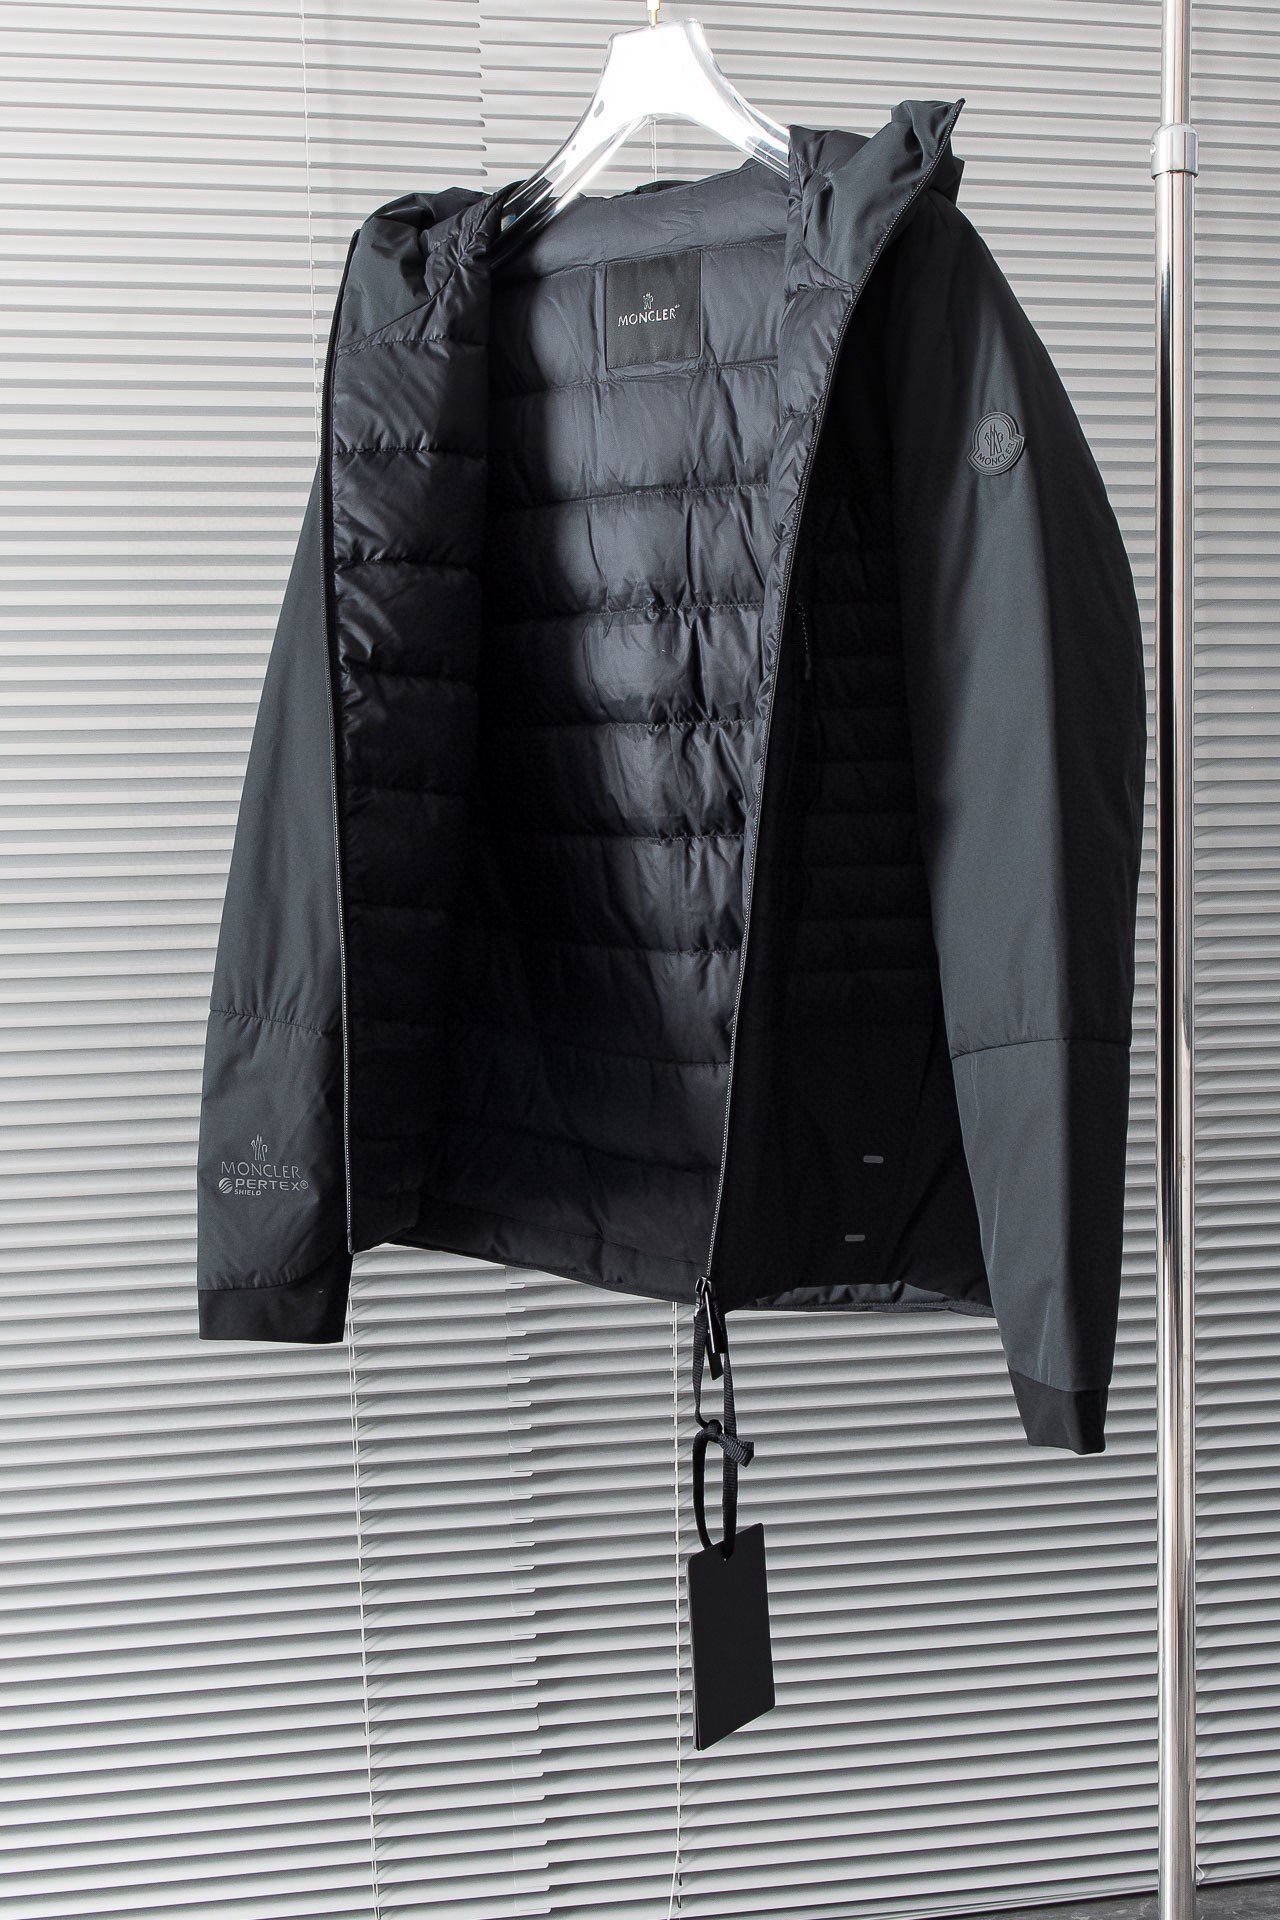 New#！！！️黑标法系mon薄款夹克外套羽绒服顶级户外商务系列！！上身就是很有品的时尚绅士DWR超强防